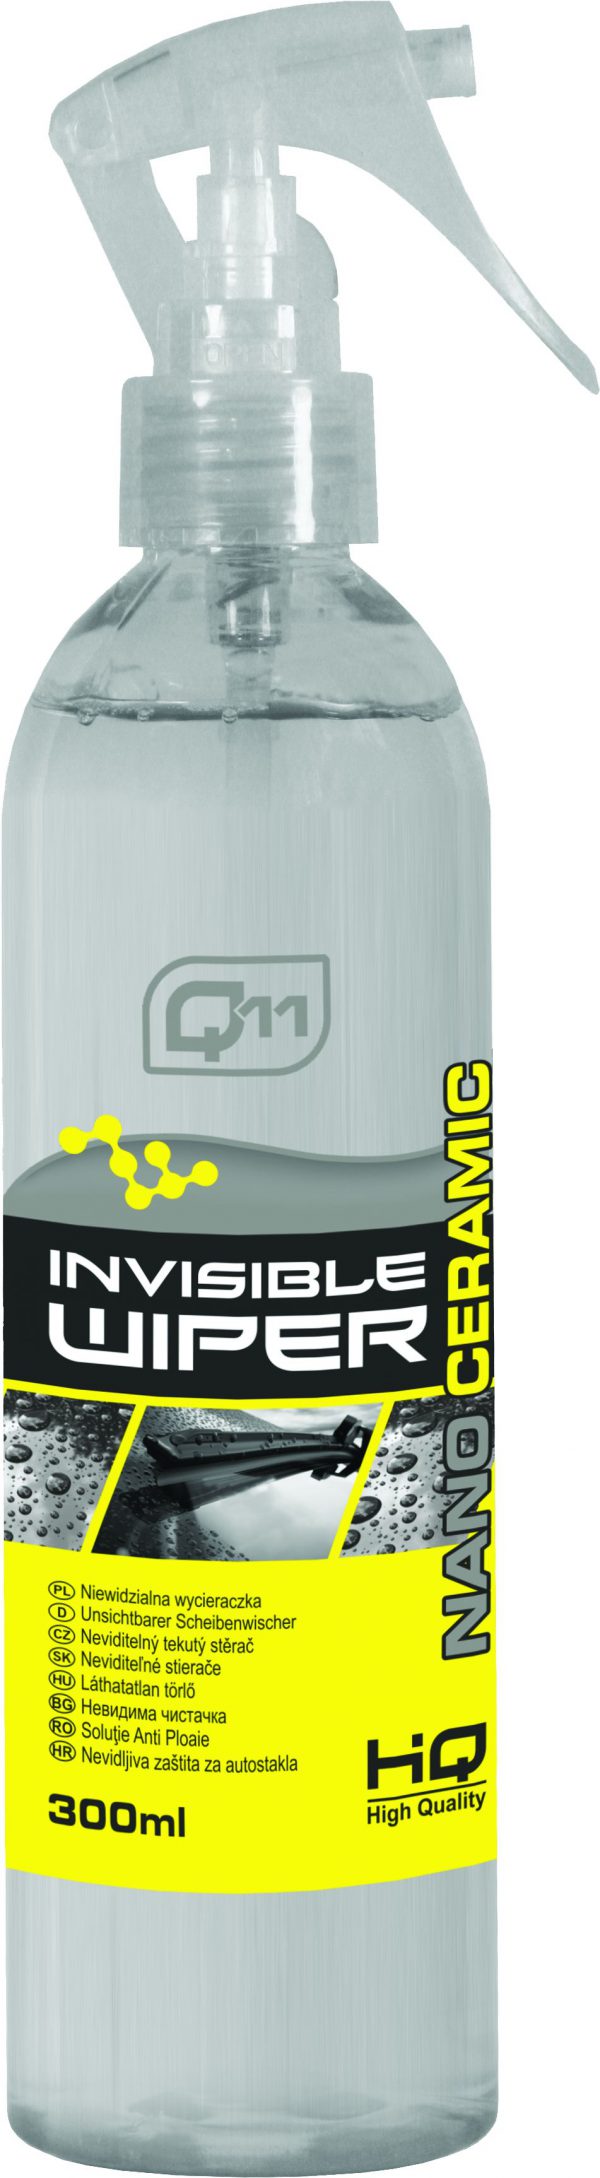 Q11 Nano Ceramic Invisible Wiper Niewidzialna wycieraczka 300ml